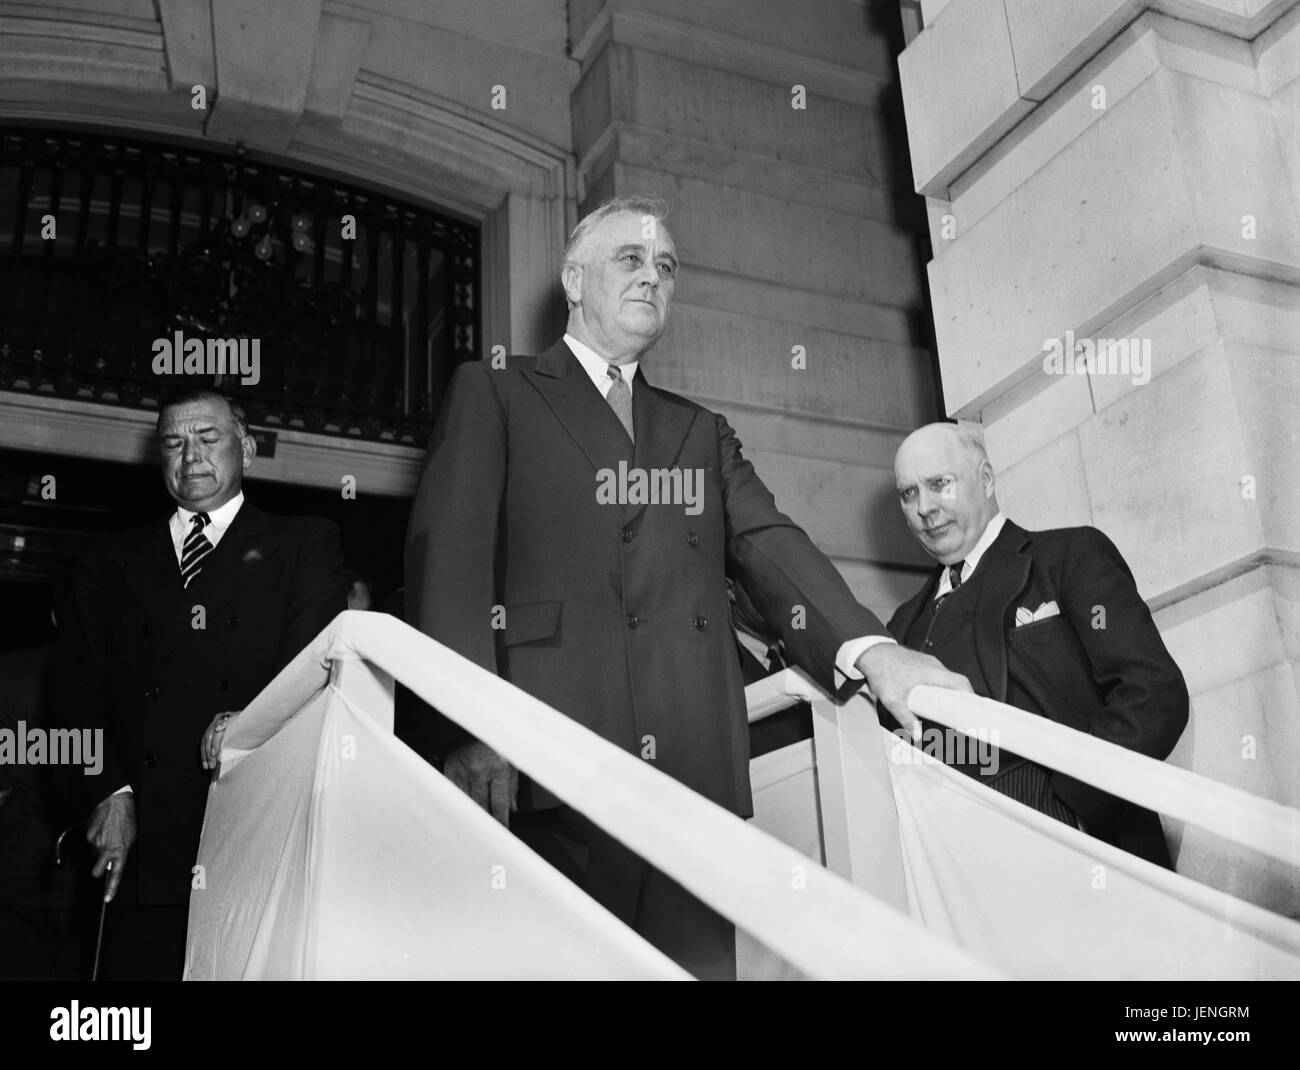 Le président américain, Franklin Roosevelt, laissant Capitole après l'Adressage Session conjointe du Congrès, Washington DC, USA, Harris & Ewing, 21 Septembre 1939 Banque D'Images